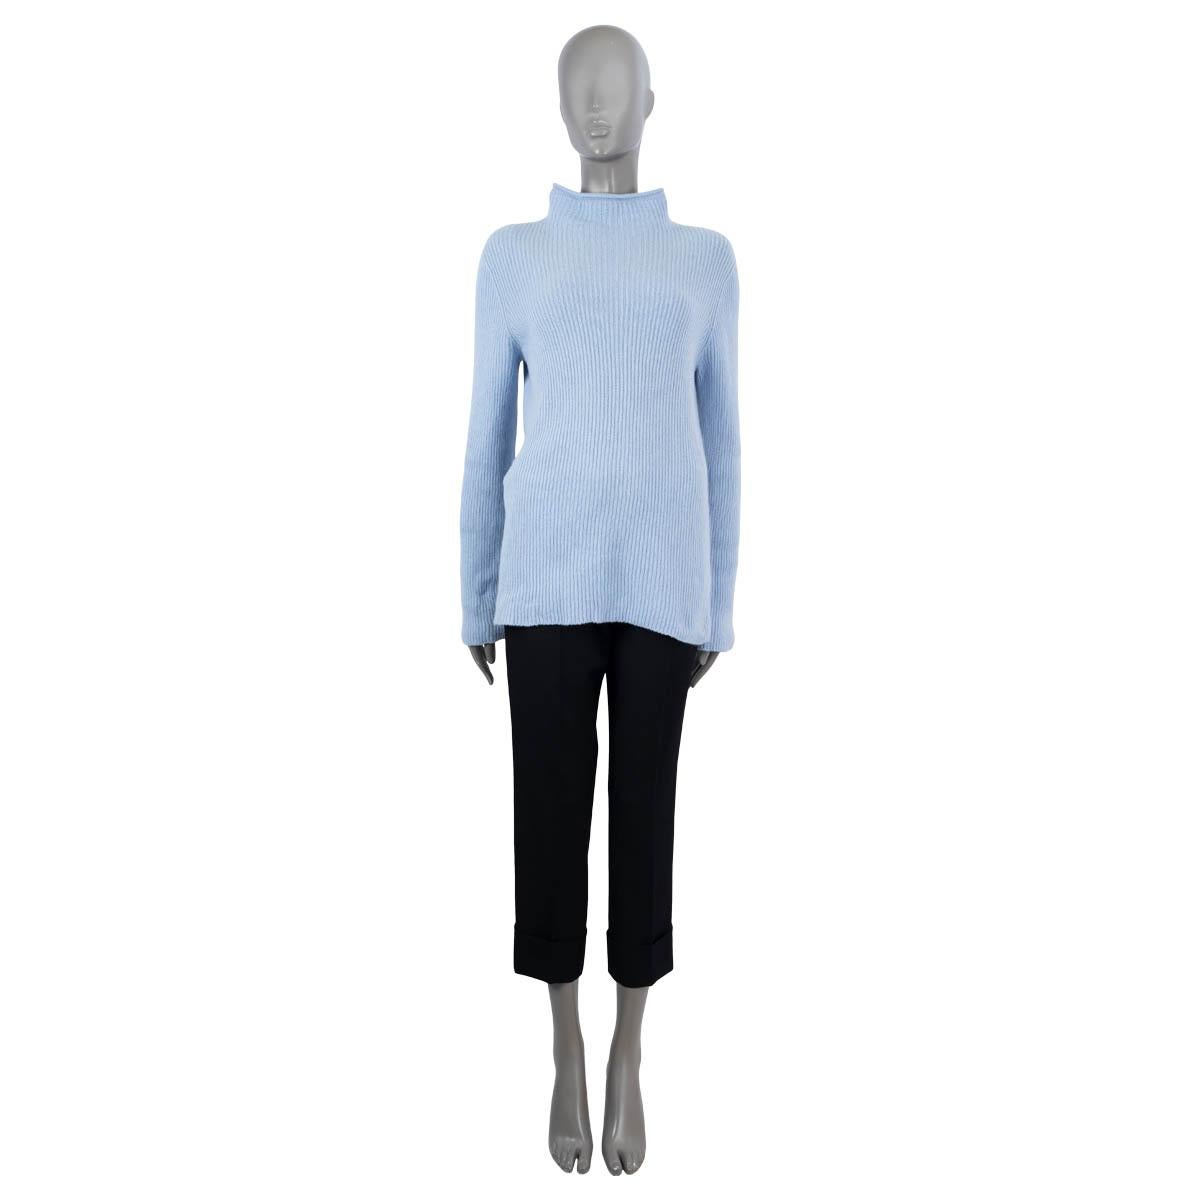 Pull The Row 100% authentique en laine (65%) et cachemire (35%) bleu layette. Contient une silhouette longiligne, un col moqueur et des manches longues. Non doublé. A été porté et est en excellent état.

Mesures
Taille de